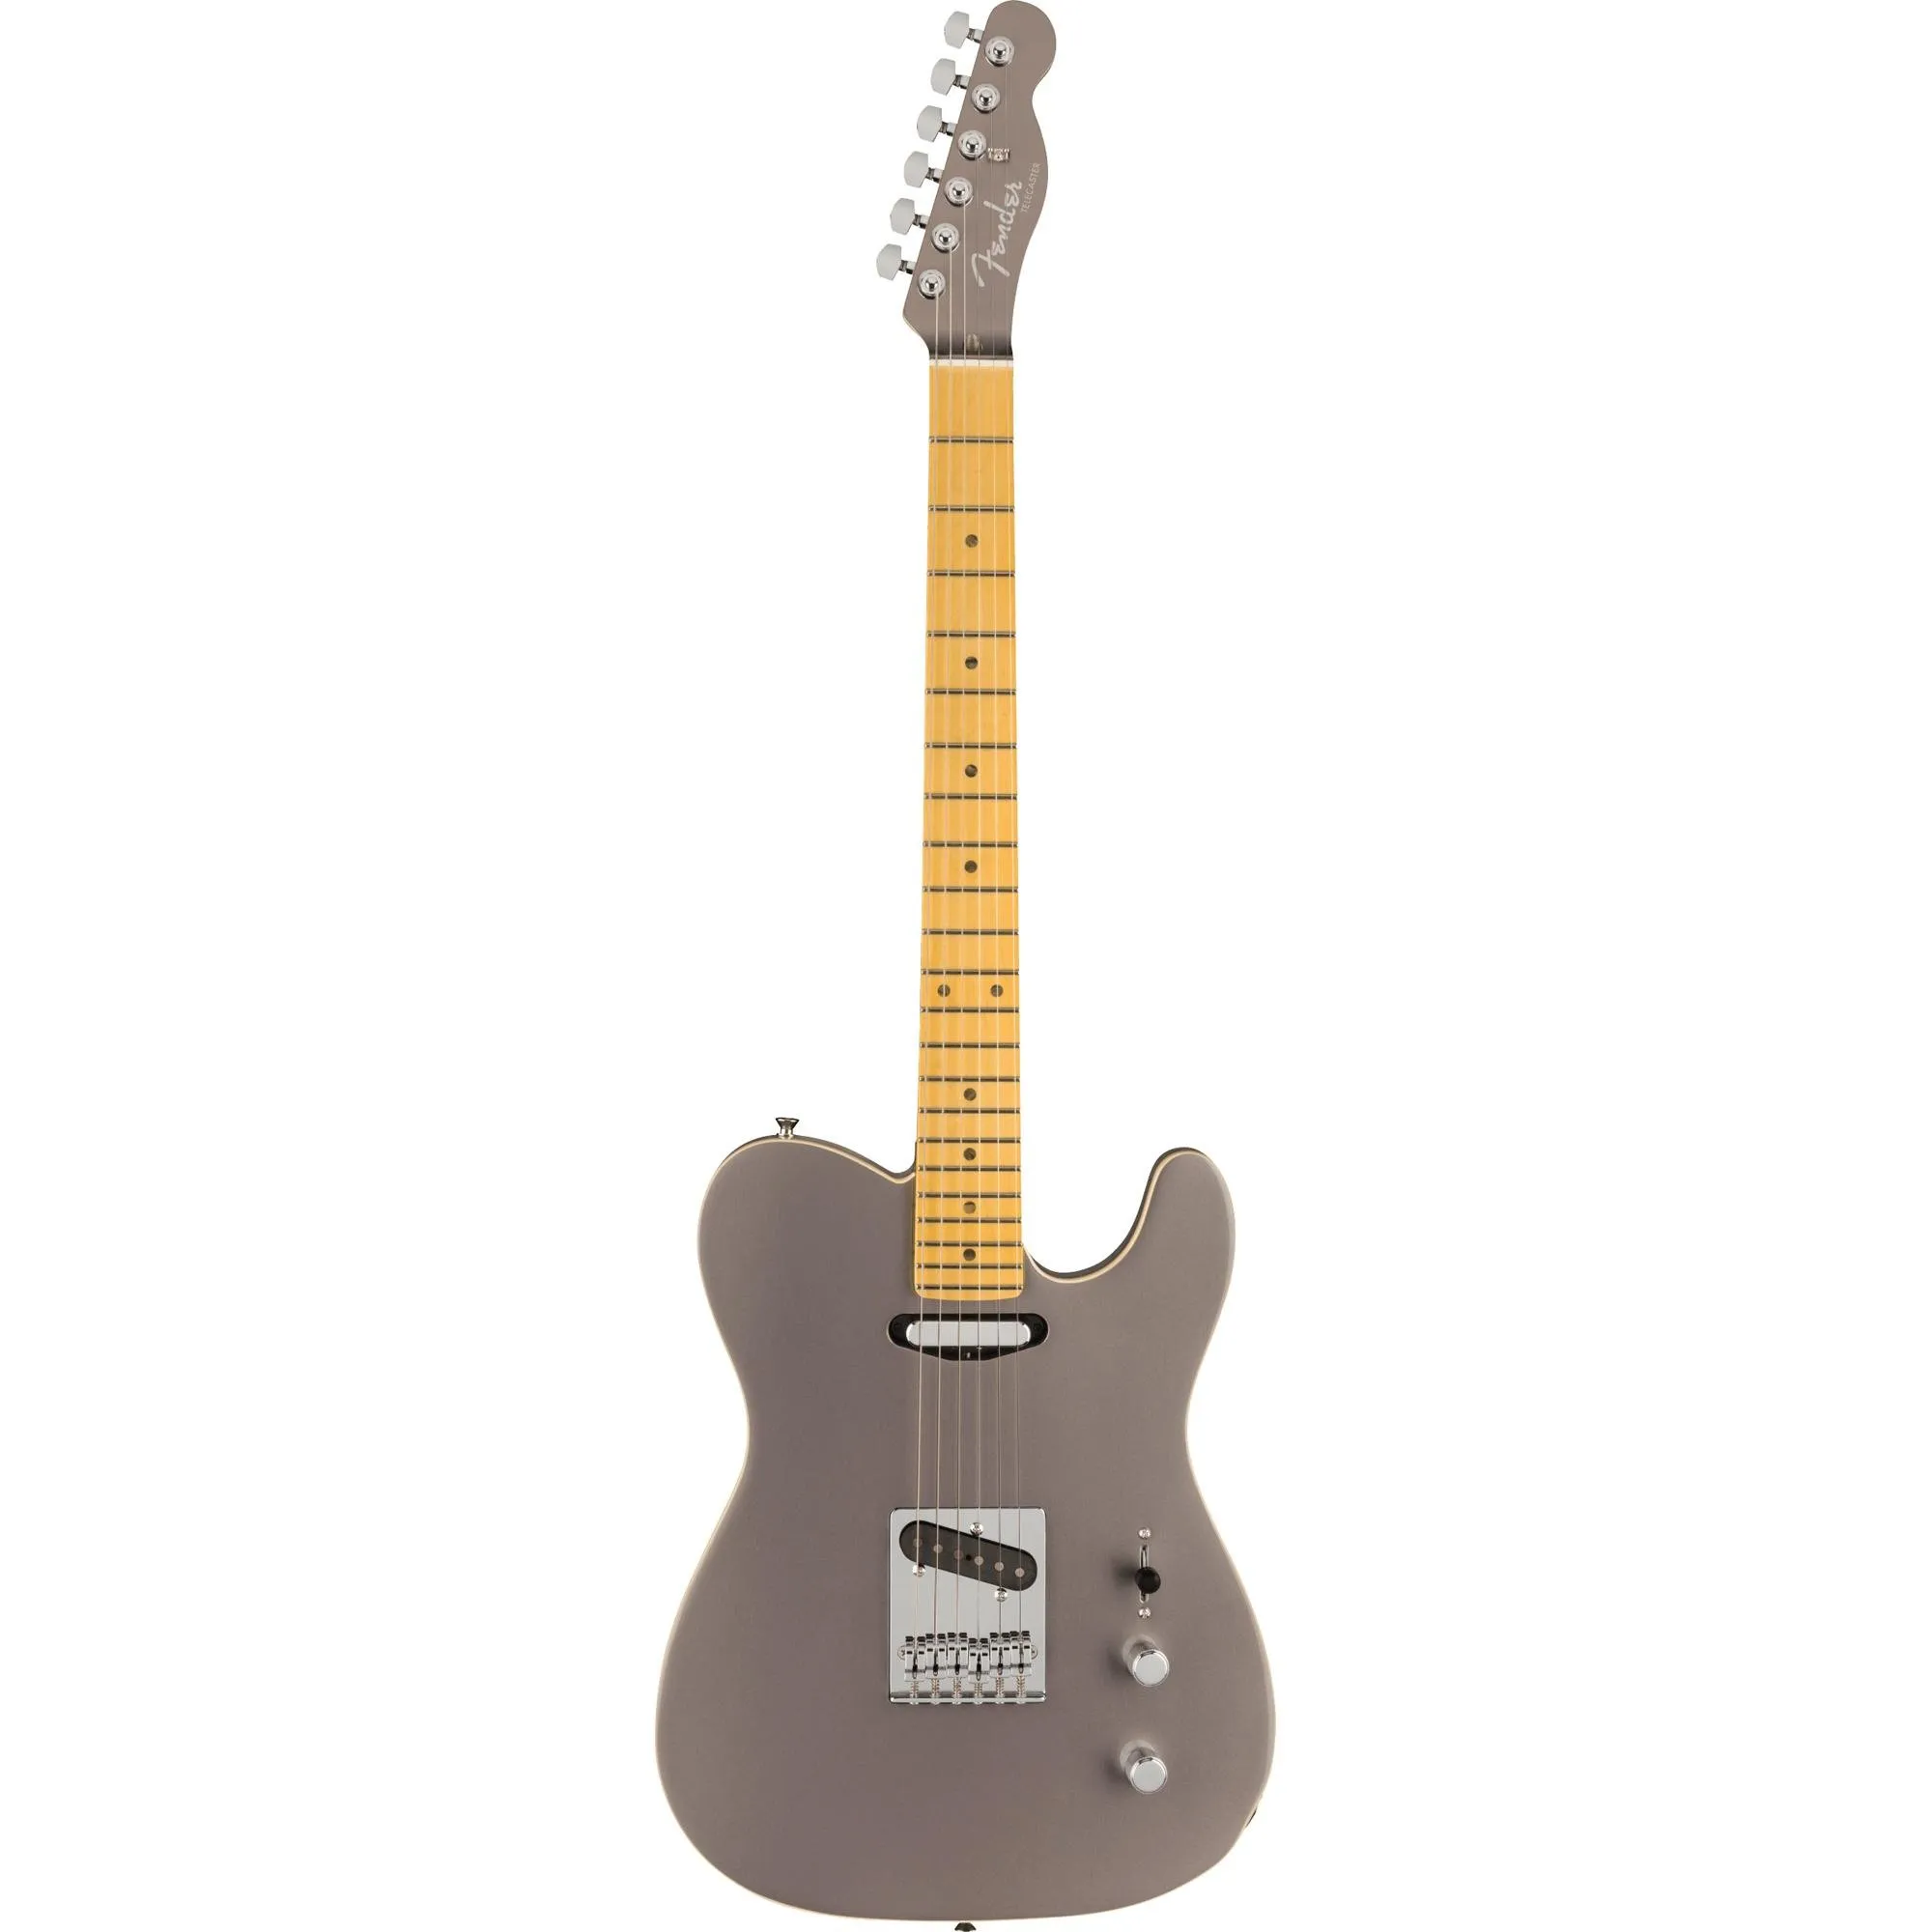 Guitarra Fender Telecaster Aerodyne Special Dolphin Gray por 10.999,99 à vista no boleto/pix ou parcele em até 12x sem juros. Compre na loja Mundomax!